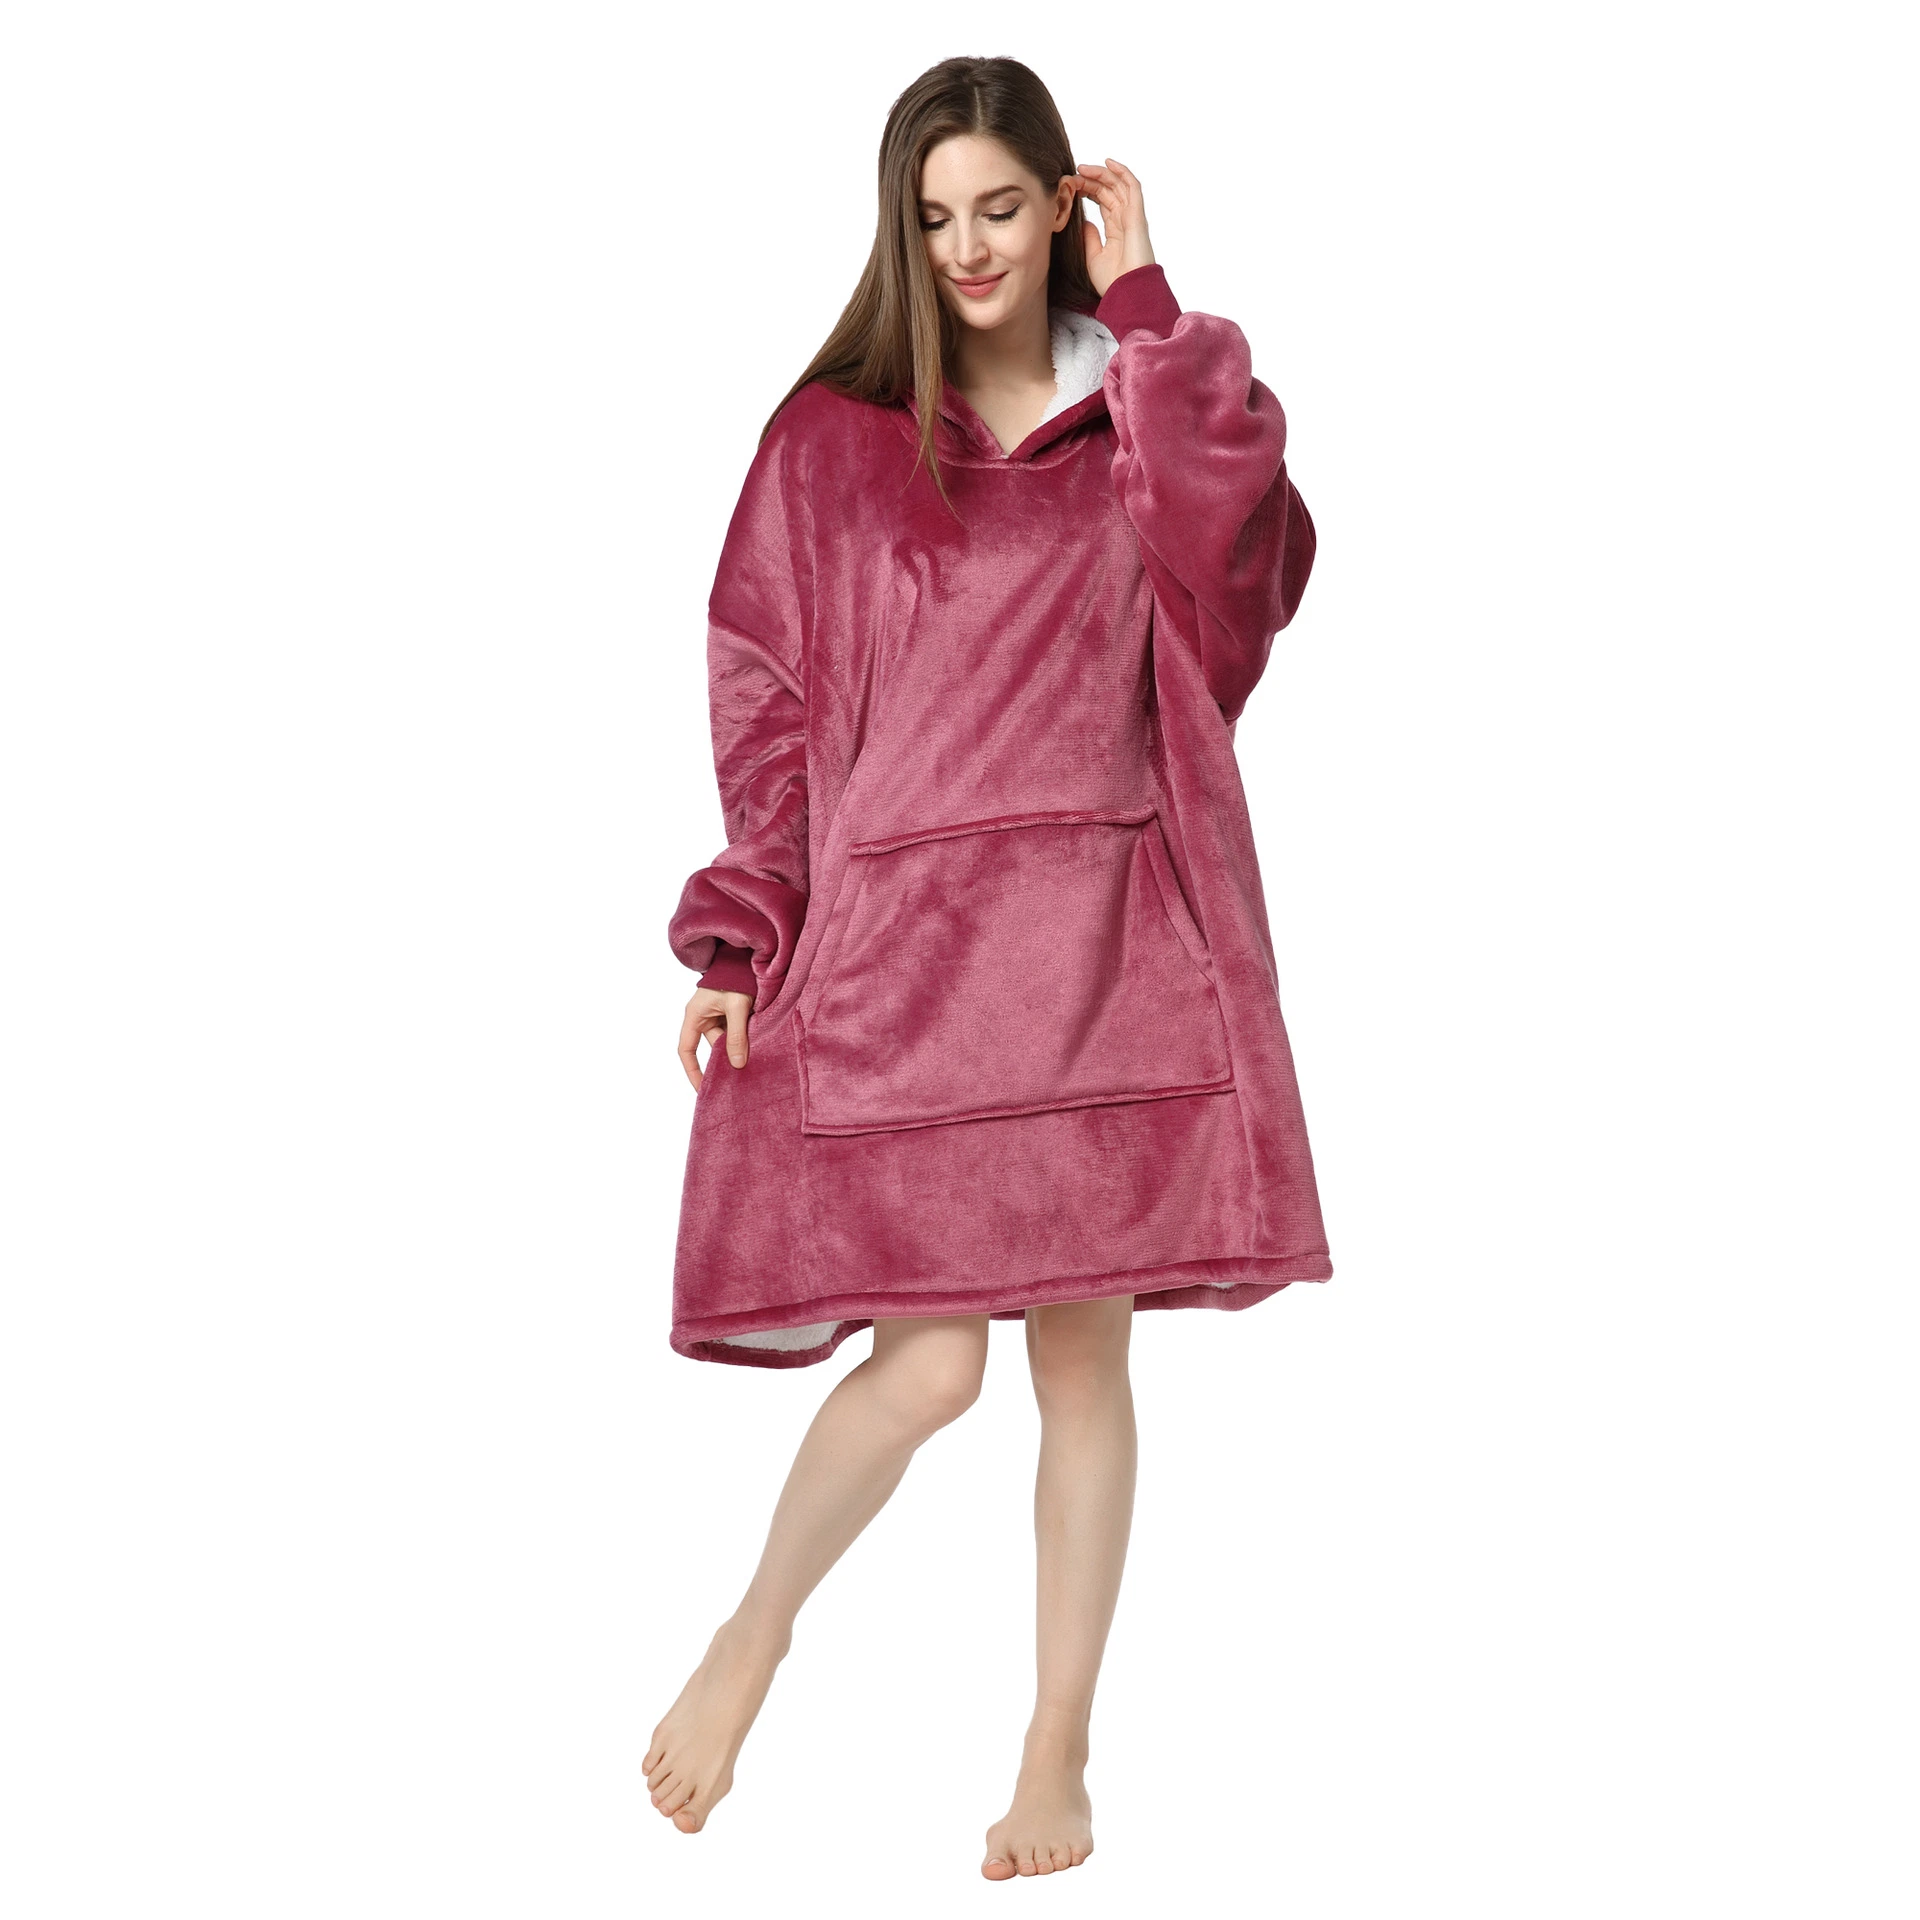 В наличии имеются модели для наносимого одеяла MicrofFibre и Sherpa Флисовая носимые одеяла большого размера